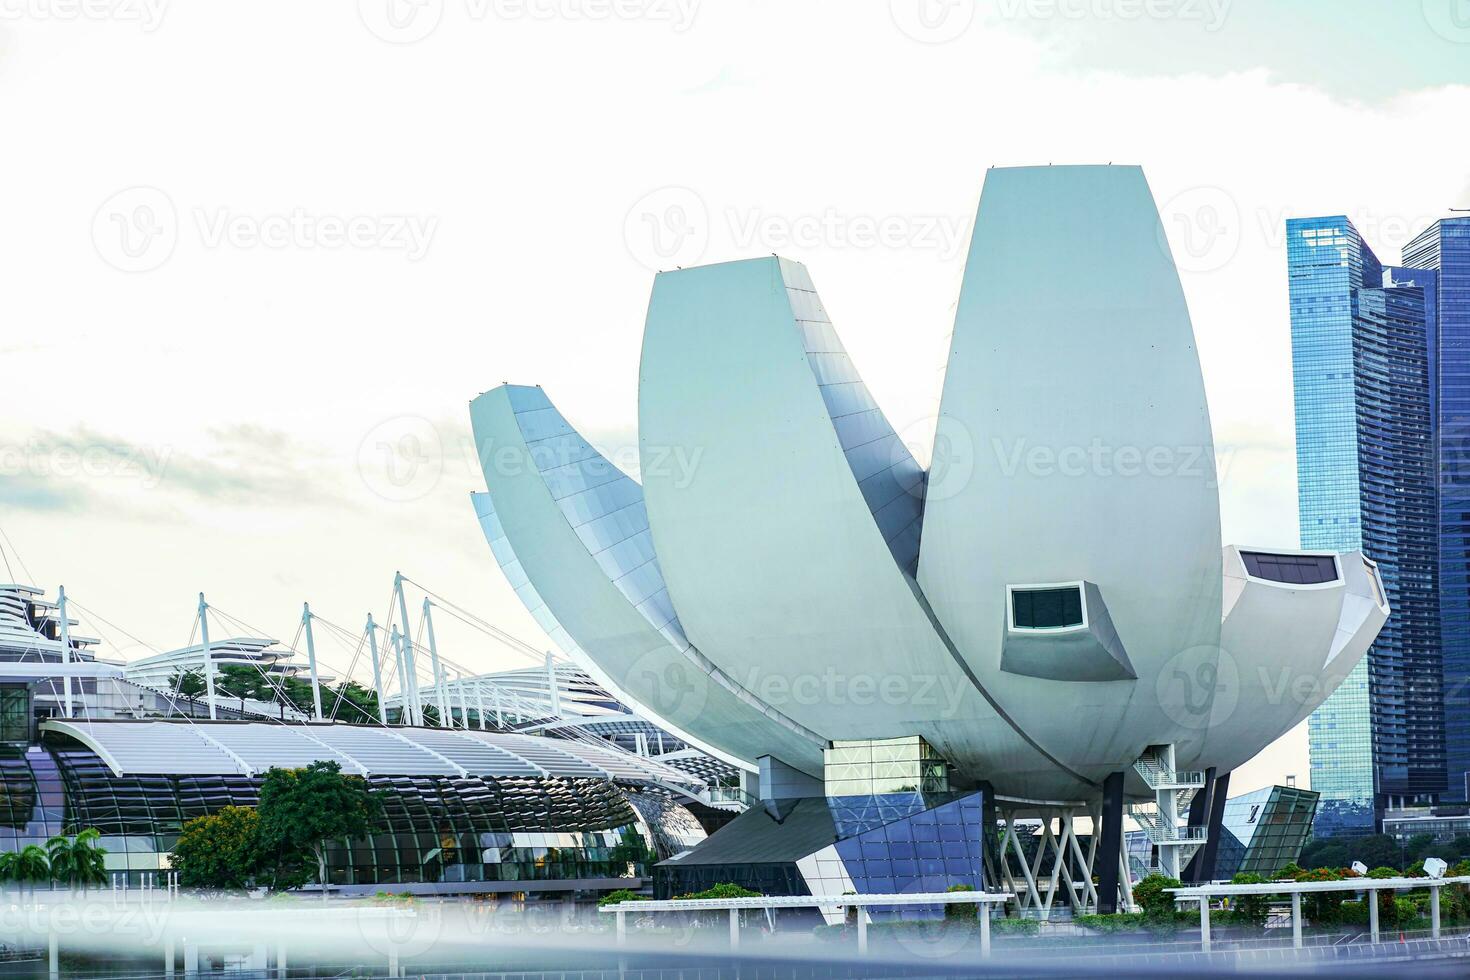 de konstvetenskap museum är också en singapore attraktion och inkluderar känd utställningar den där skjuta på de gränser av vetenskap, teknologi och Övrig kunskap. detta tillåten oss till ser de största. foto